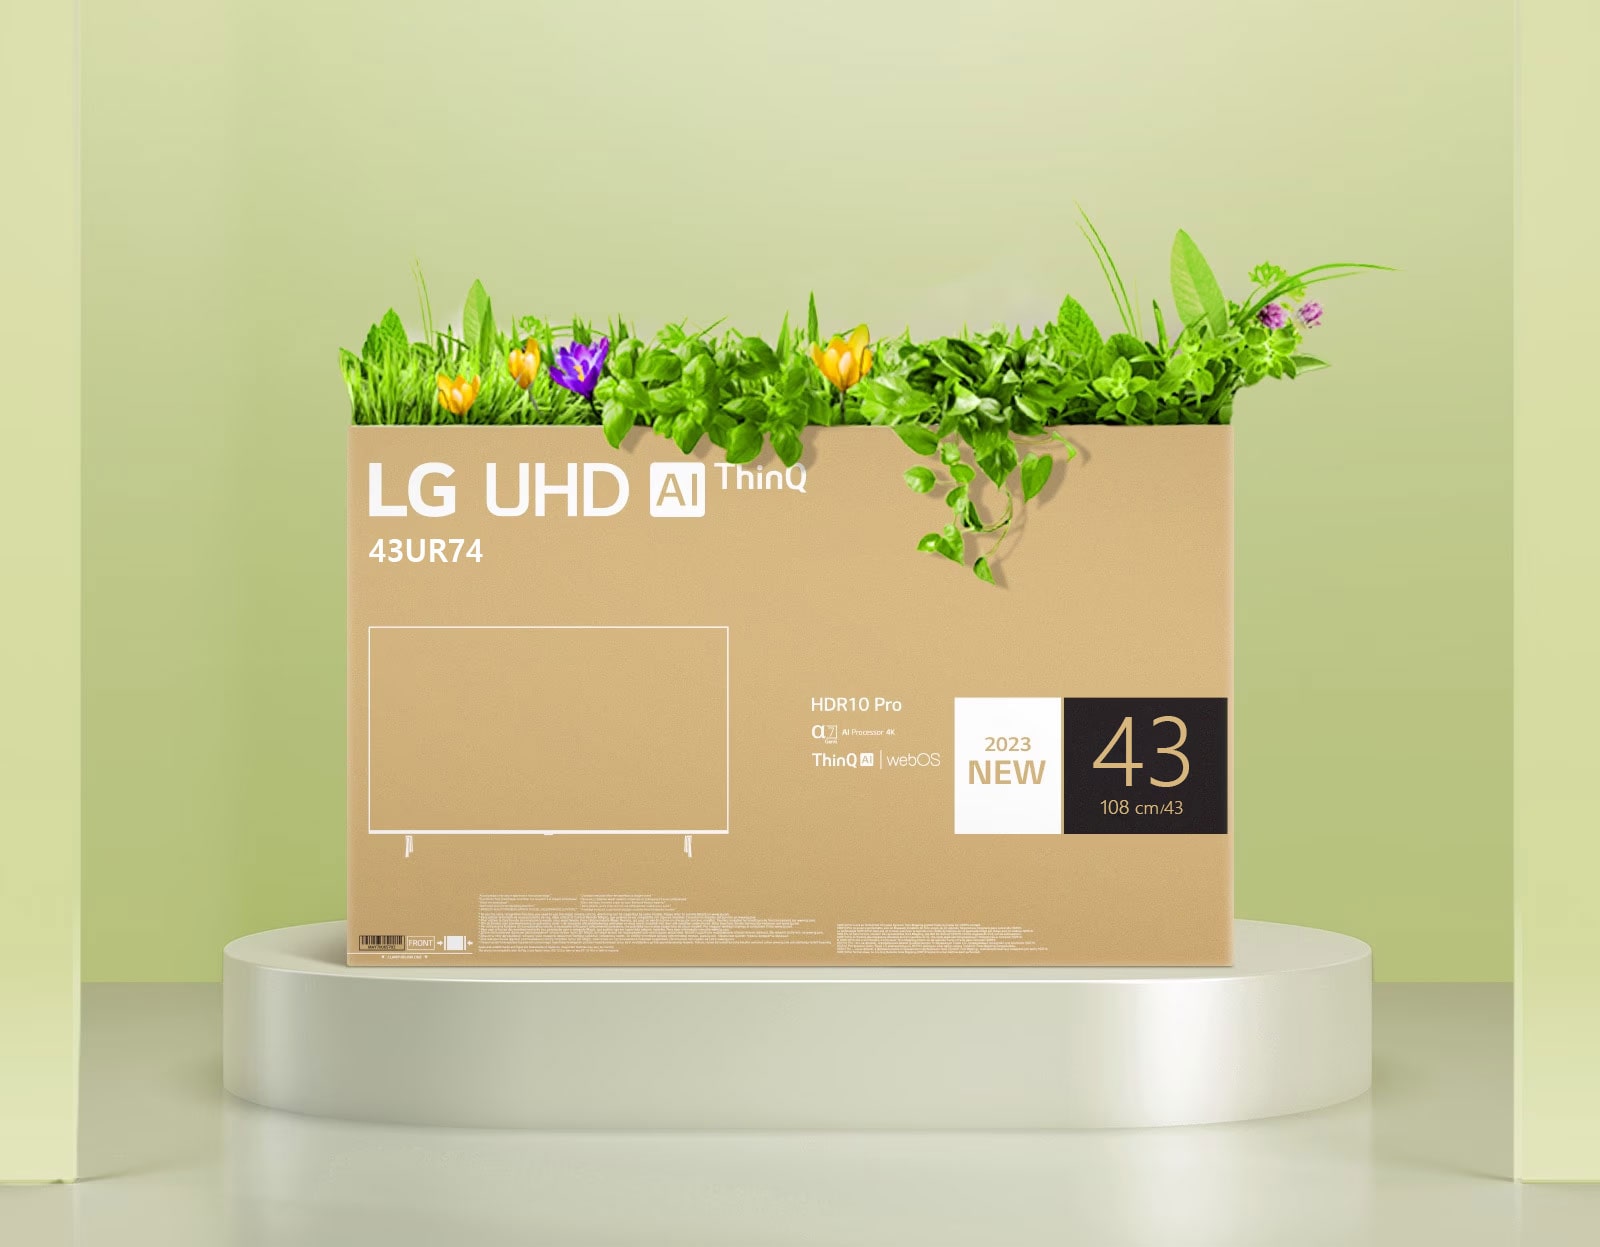 Kutija za cvijeće obnovljena uporabom ambalaže za LG UHD televizor.